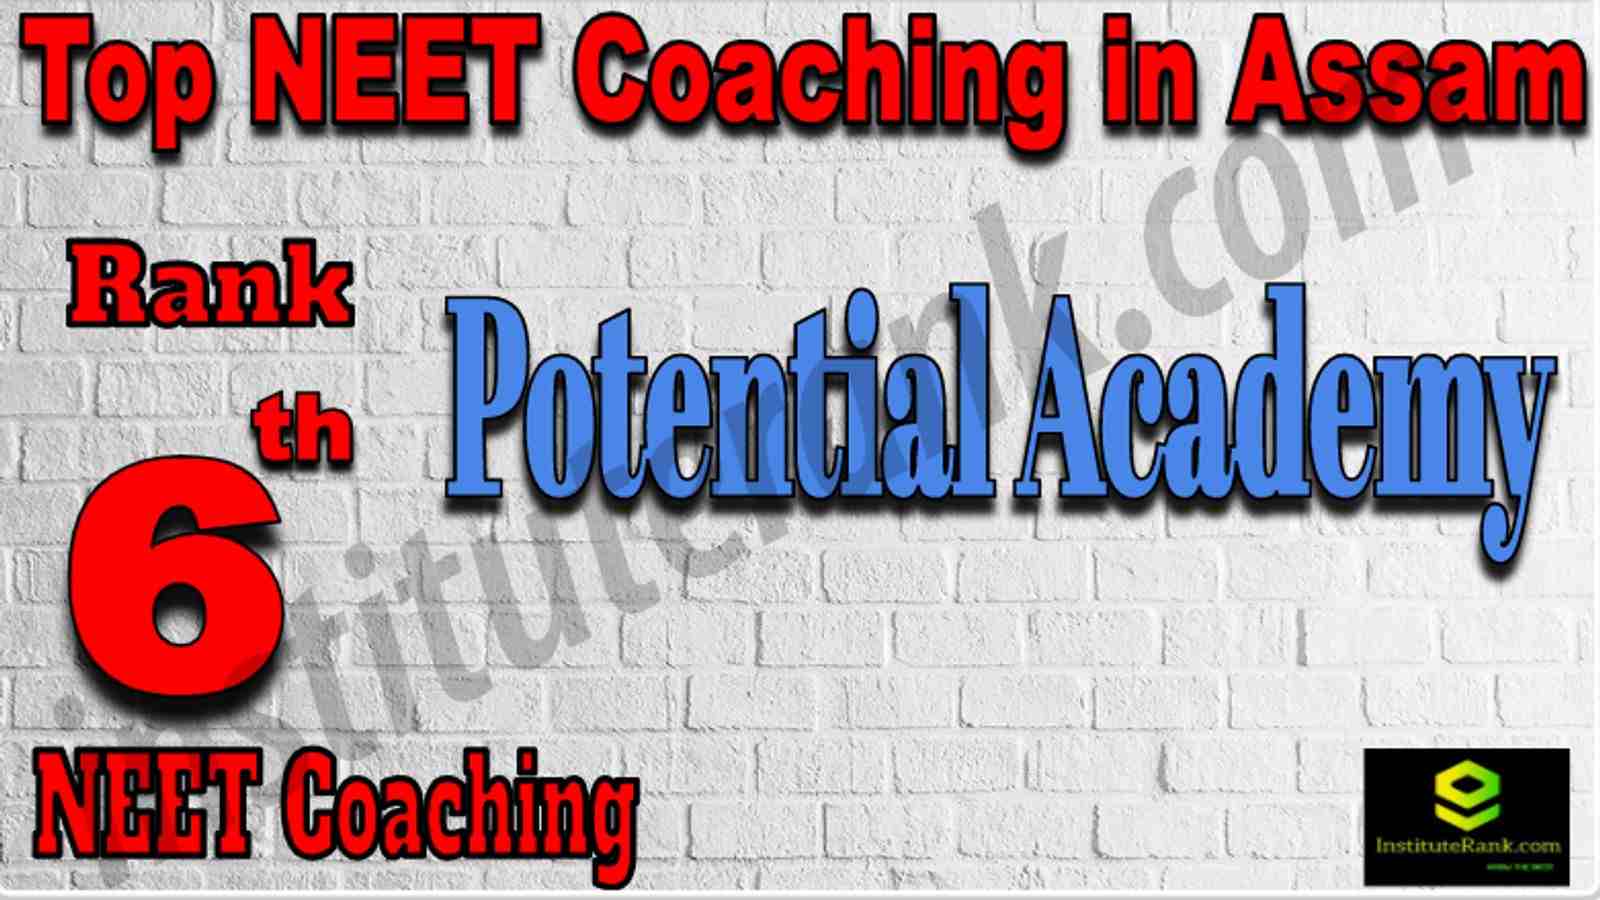 Rank 6 Top NEET Coaching in Assam